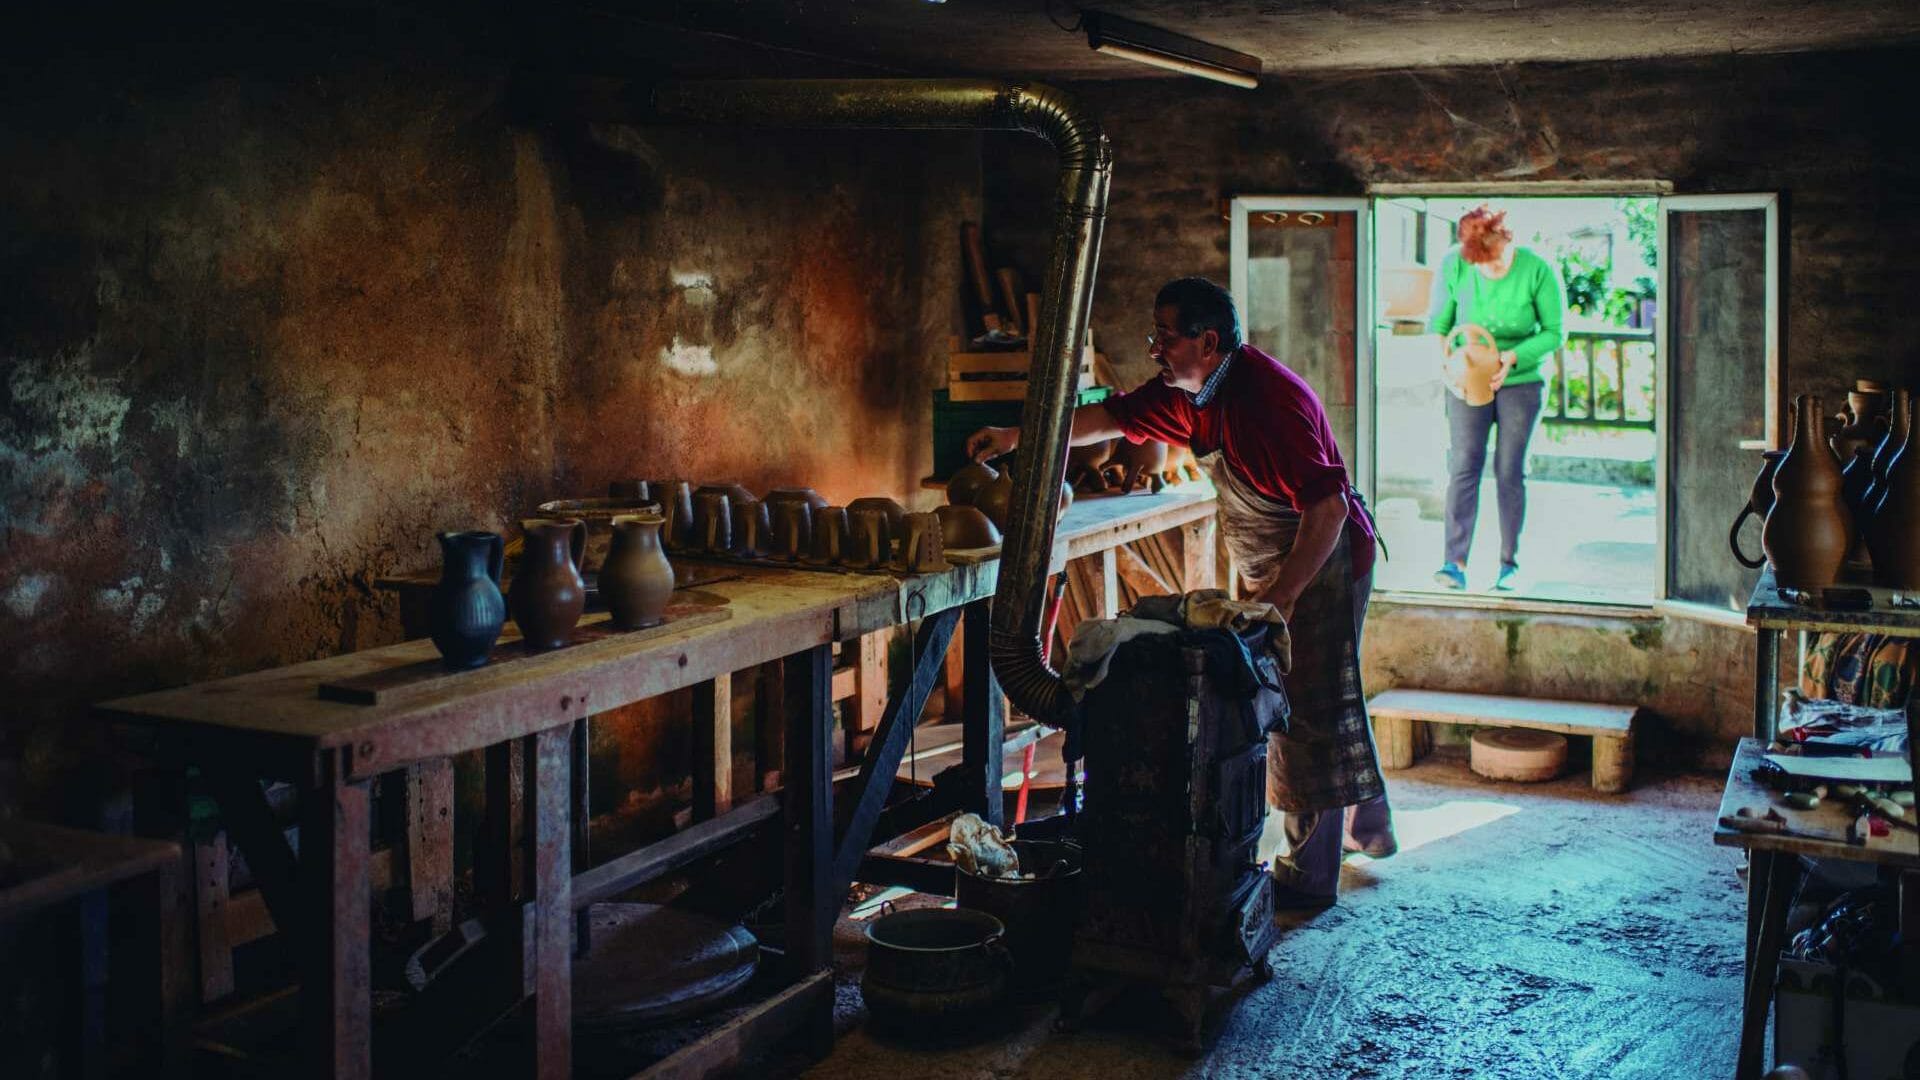 Llamas de Mouro es una pequeña aldea conocida por su cerámica negra. Ya solo queda un taller artesano. Foto © Pelayo Lacazette.